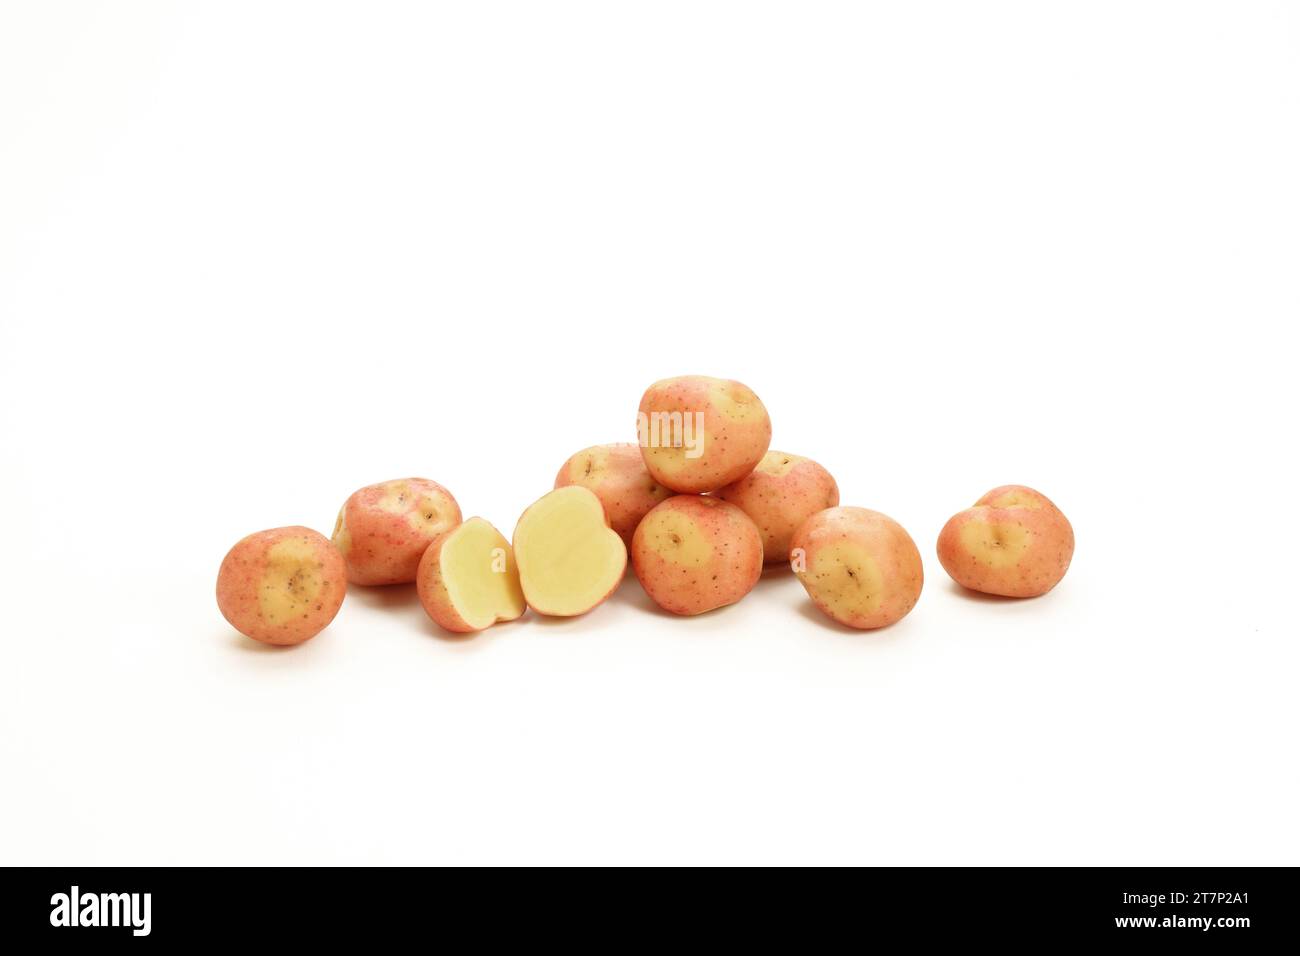 Eine Atelier-Illustration eines Haufens feuchter, cremiger, nahrhafter, rothäutiger Kartoffeln auf weißem Hintergrund. Stockfoto